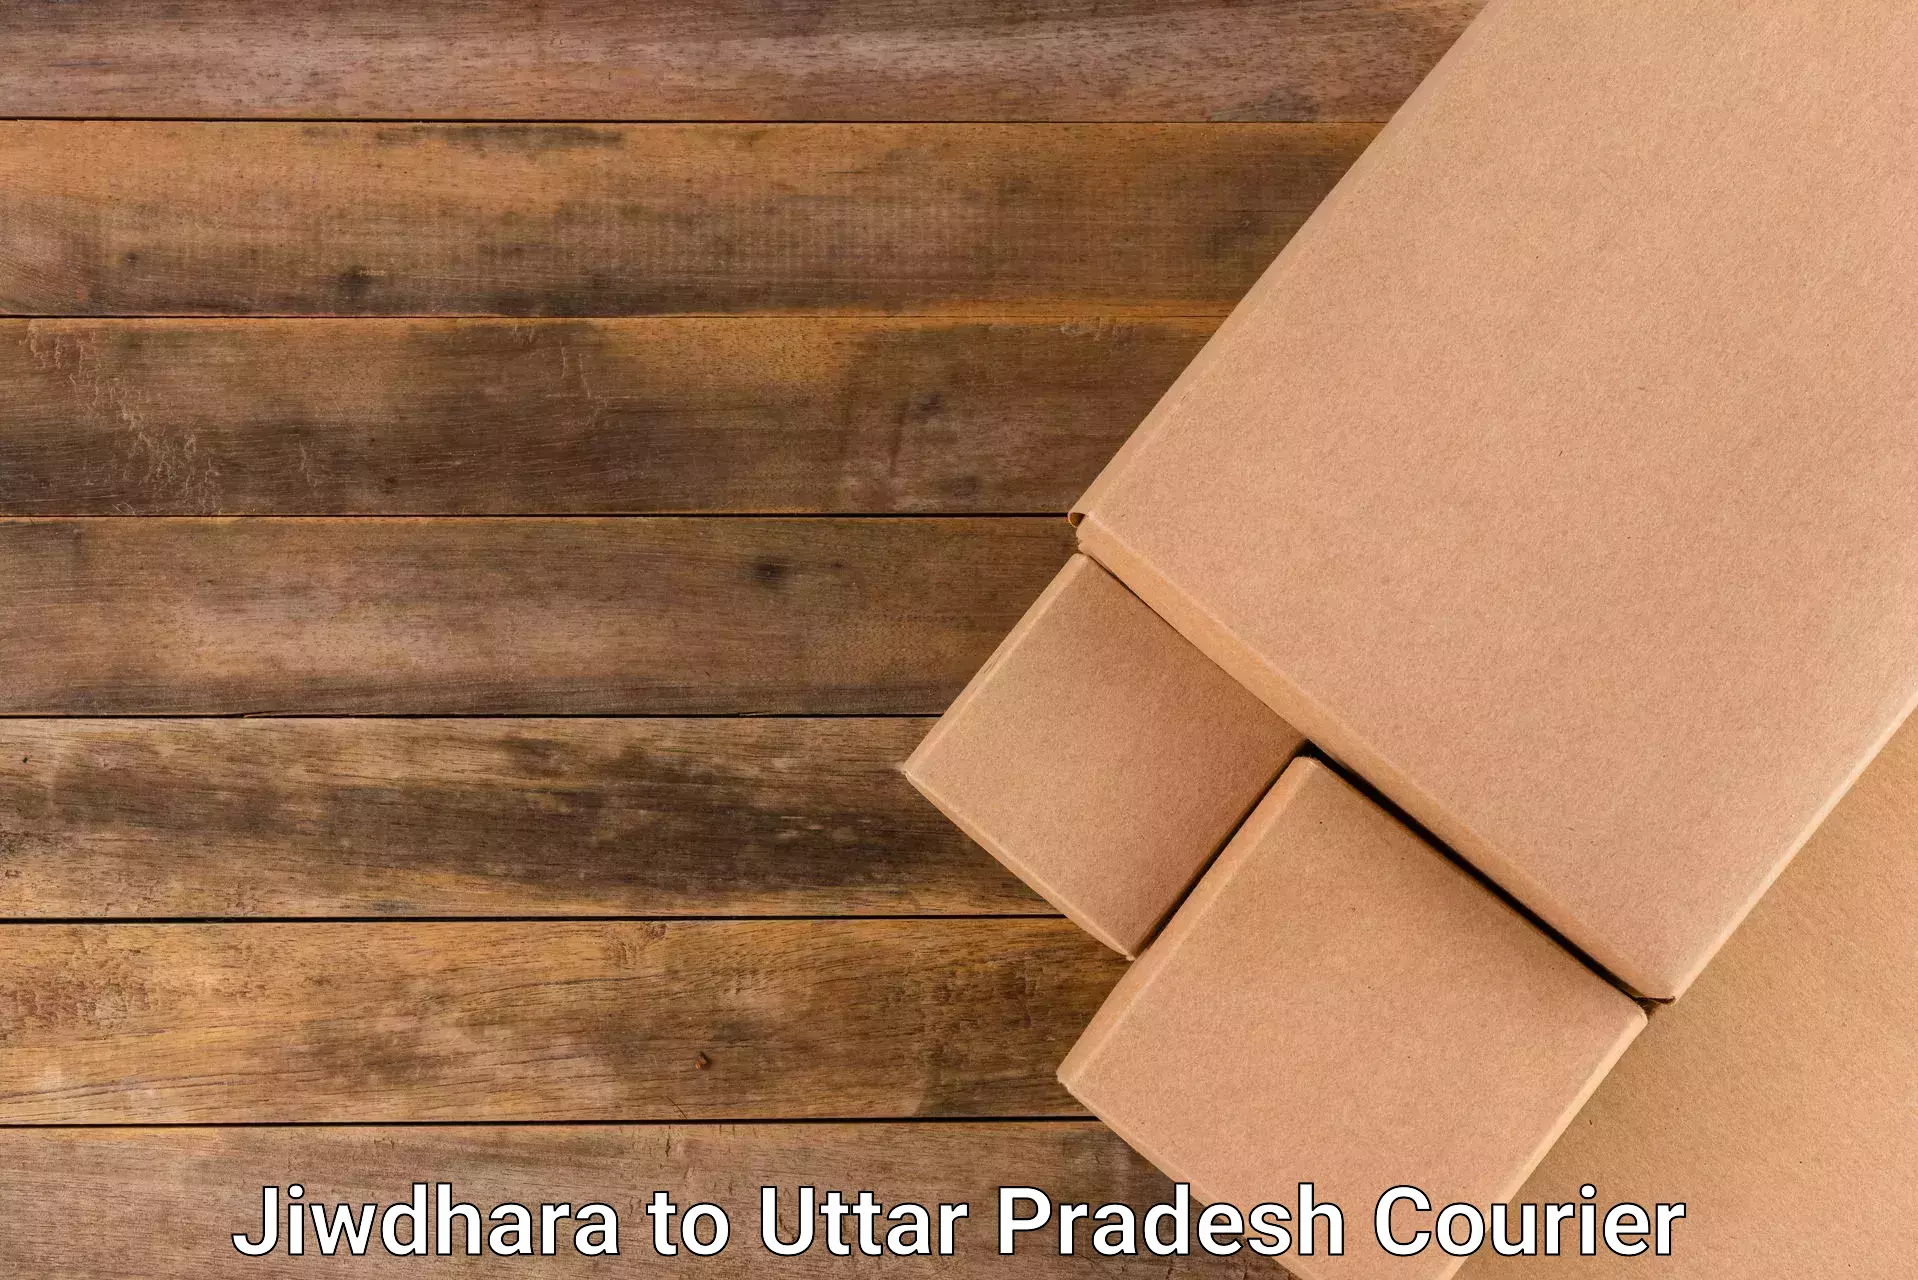 24-hour courier service Jiwdhara to Patti Pratapgarh